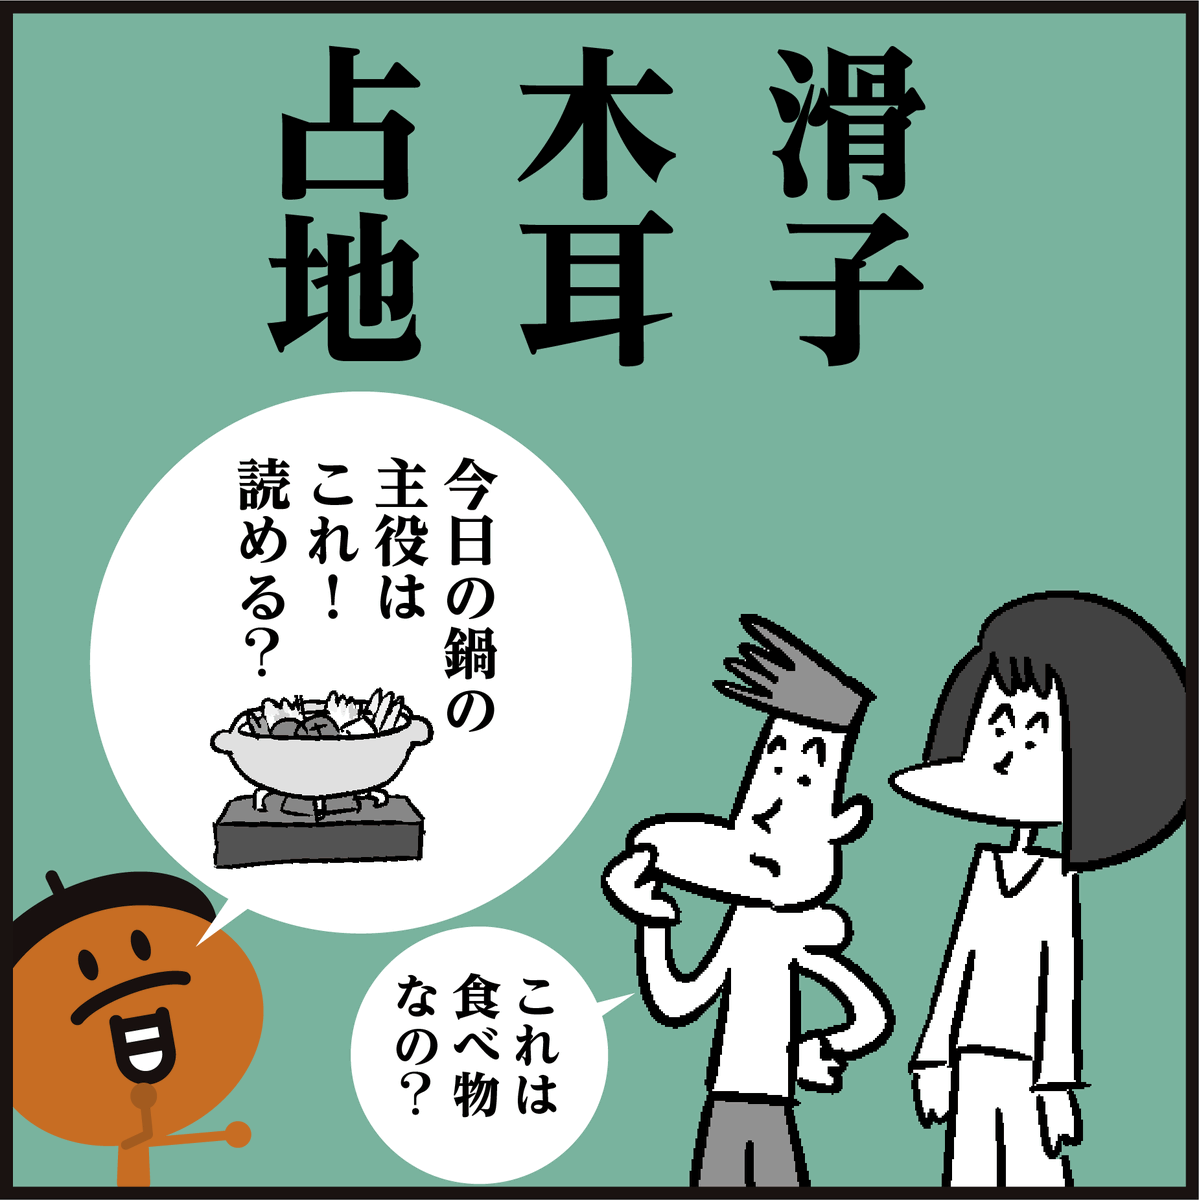 漢字【滑子】【木耳】【占地】
読めましたか〜? ヒントは食べ物🤔 #4コマ漫画 #イラスト #クイズ #豆知識 